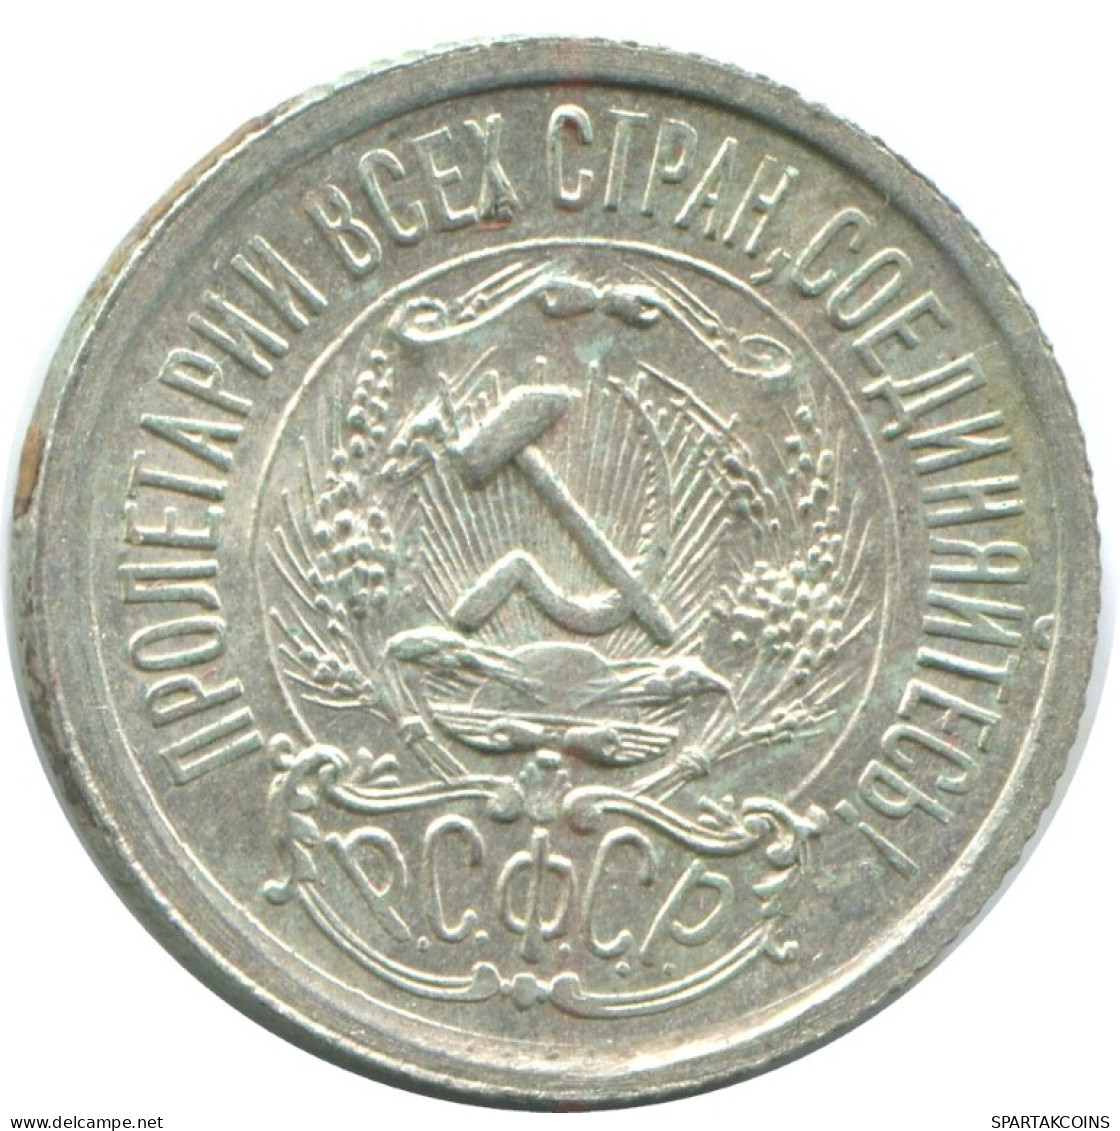 15 KOPEKS 1923 RUSSIA RSFSR SILVER Coin HIGH GRADE #AF086.4.U.A - Russland